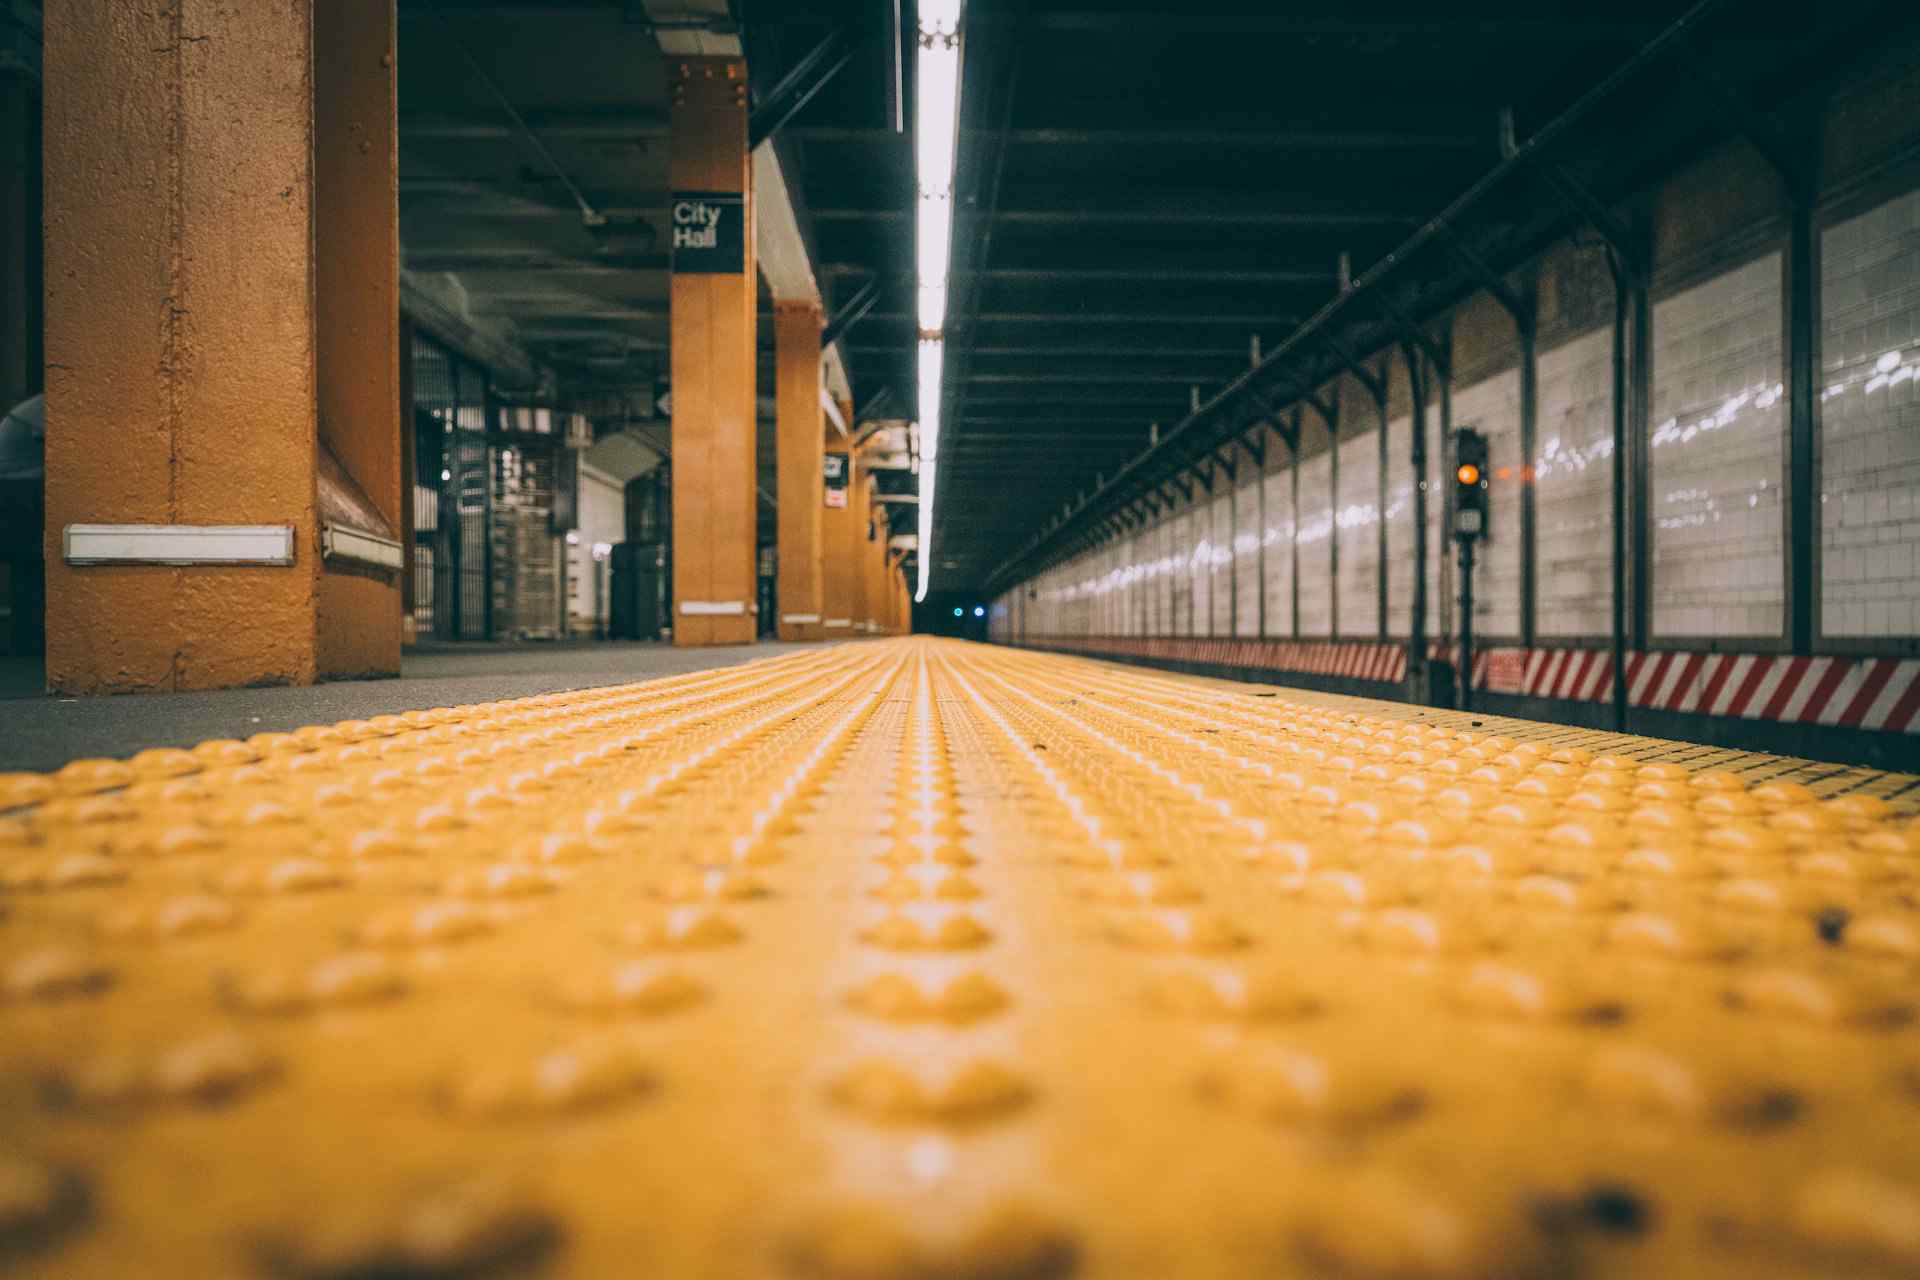 Vista a nivel de suelo de una plataforma de estación de metro con superficie táctil amarilla de advertencia y columnas color naranja, con señalización de 'City Hall' al fondo, enfatizando la accesibilidad y orientación en el transporte público.